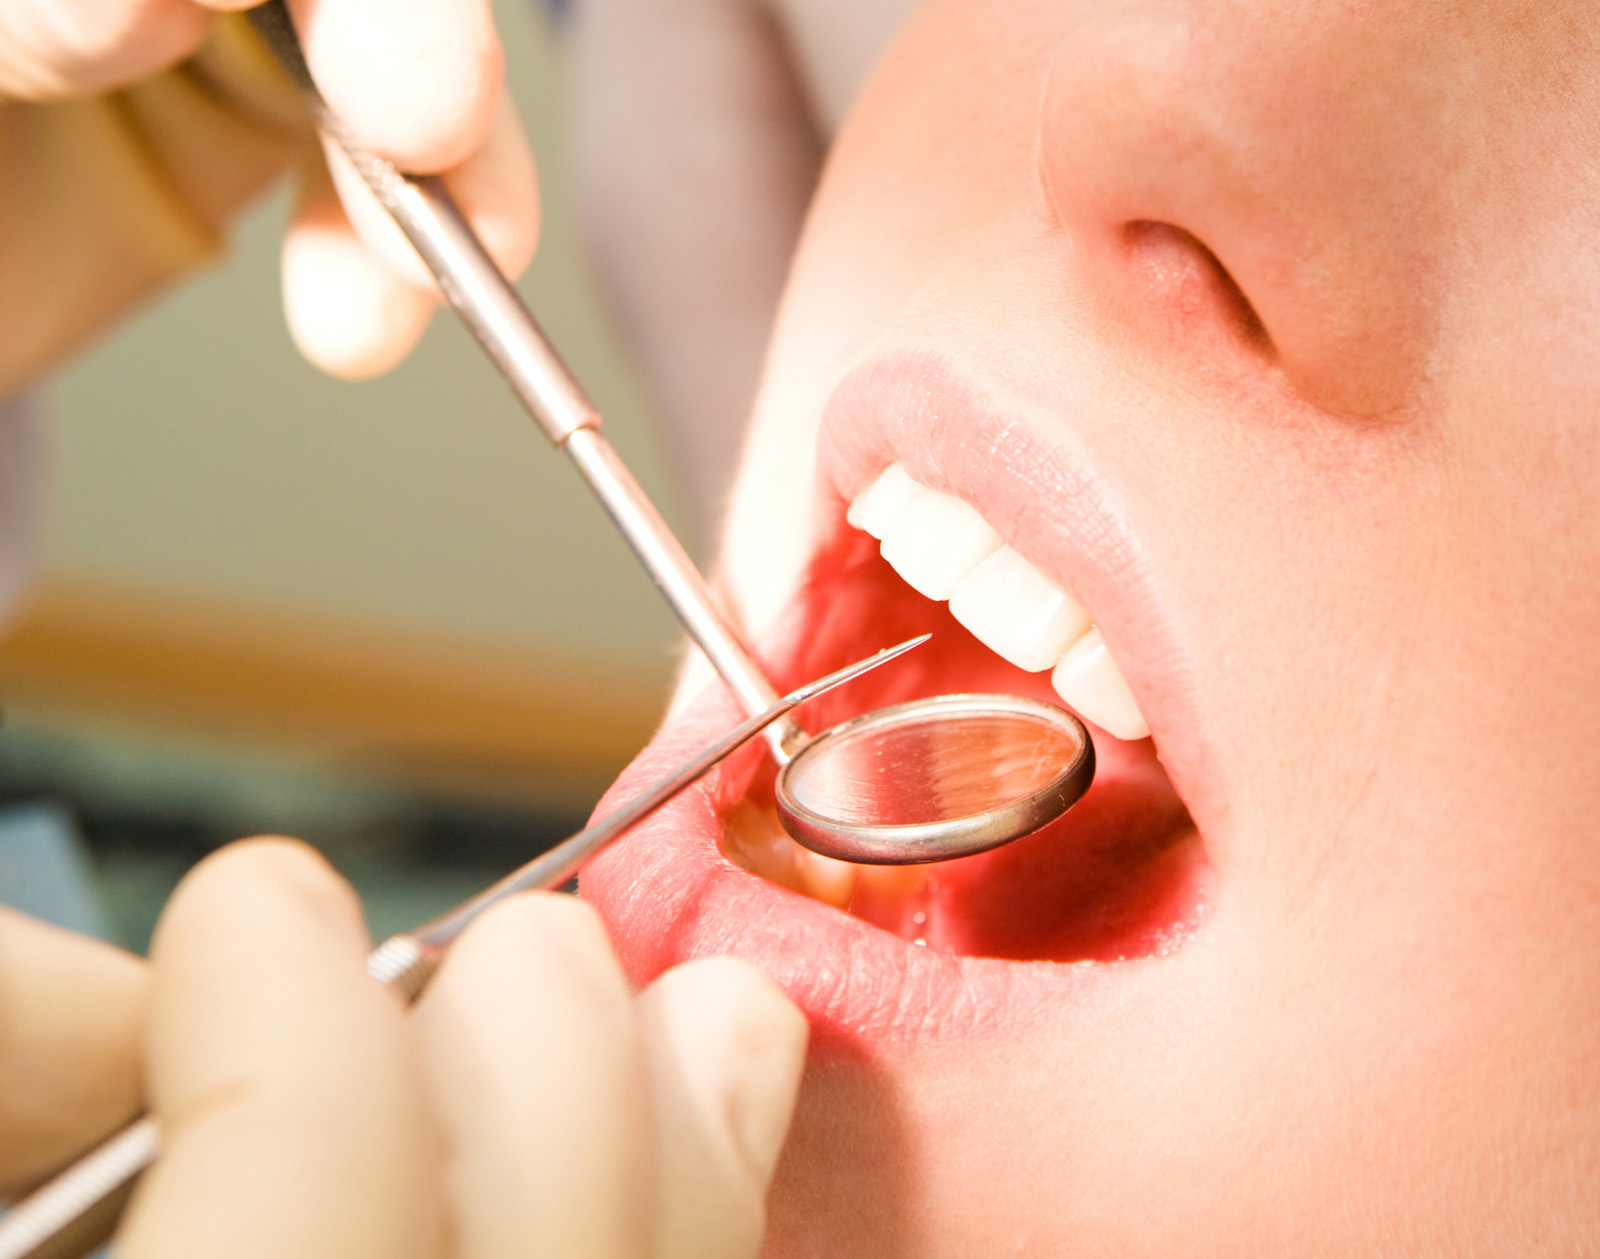 与牙周炎全口评估方案相比 局部口腔评估方案或致分级错误及产生偏倚